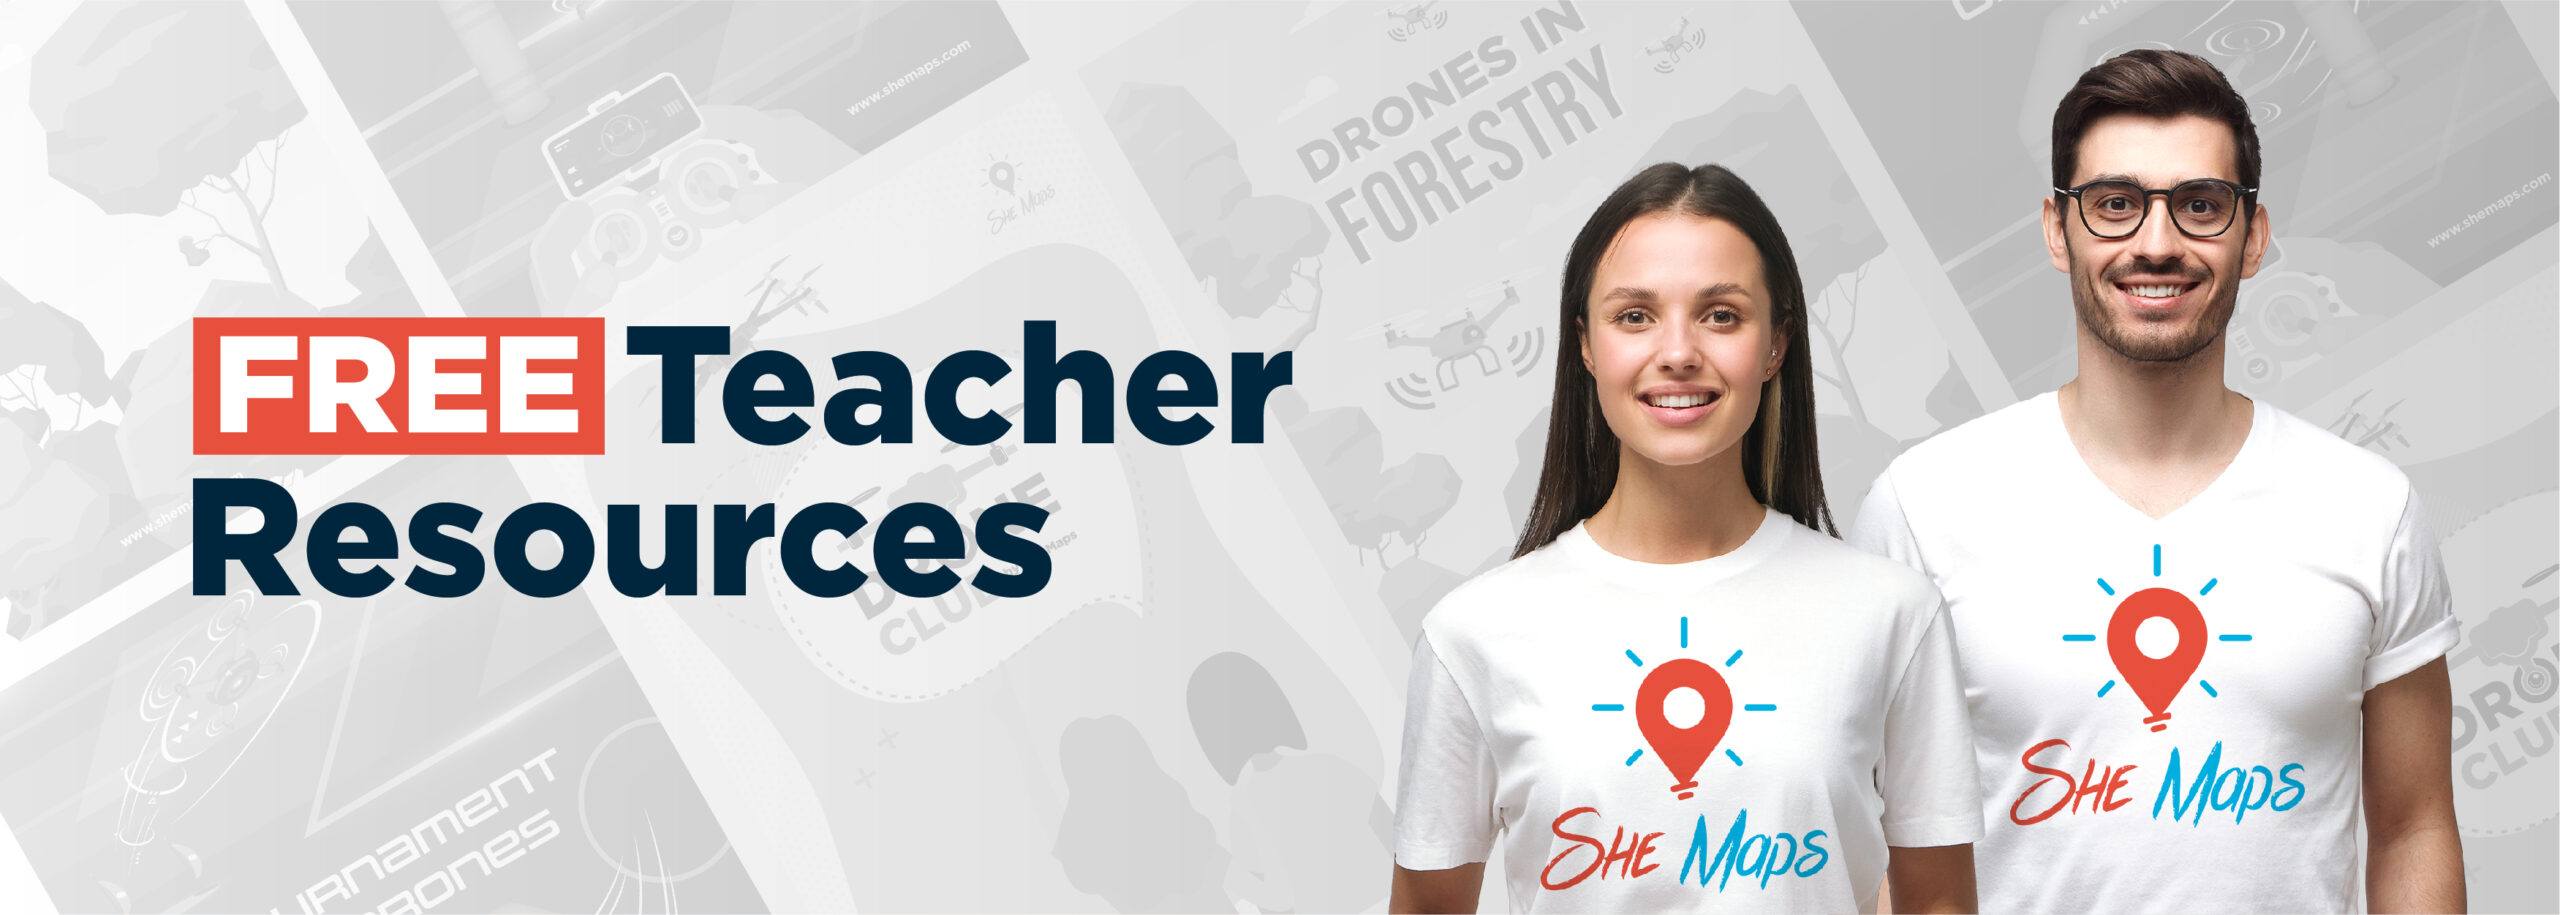 free teacher resources website banner 3